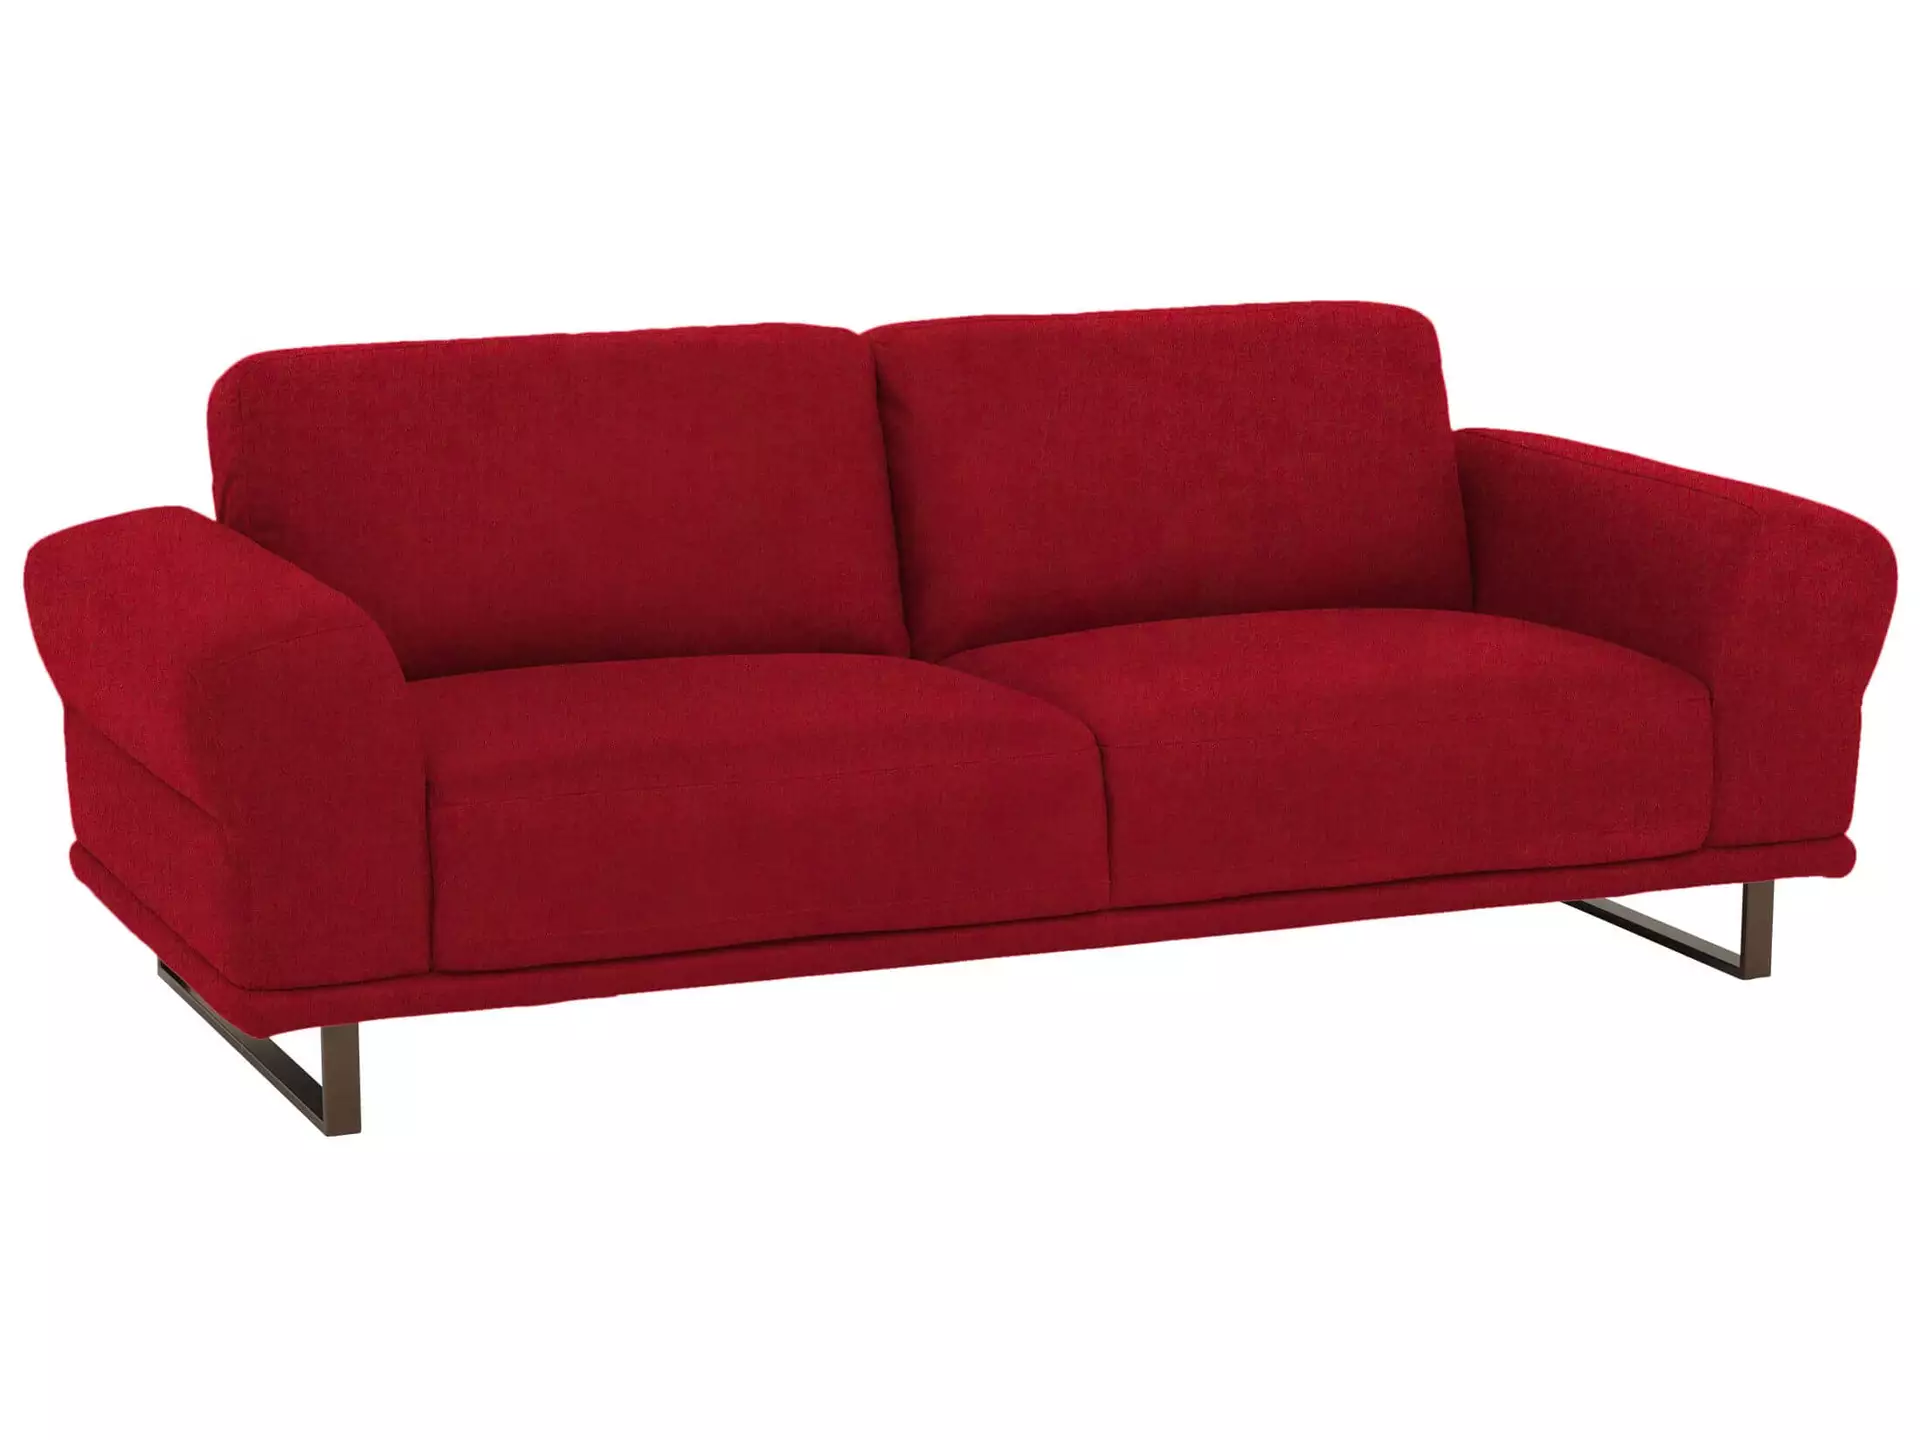 Sofa Maihan Basic B: 212 cm Schillig Willi / Farbe: Ruby Red / Material: Leder Basic